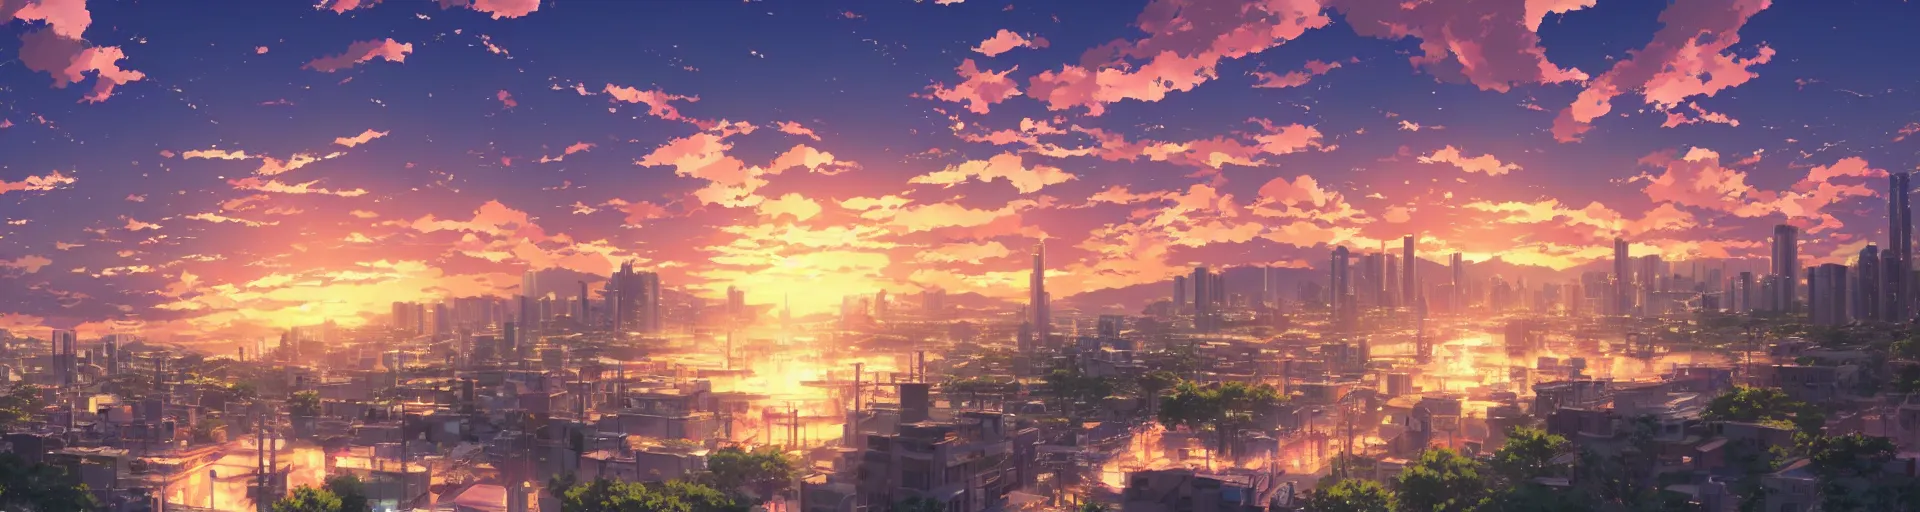 Prompt: beautiful anime sunset cityscape makoto shinkai - H 1080